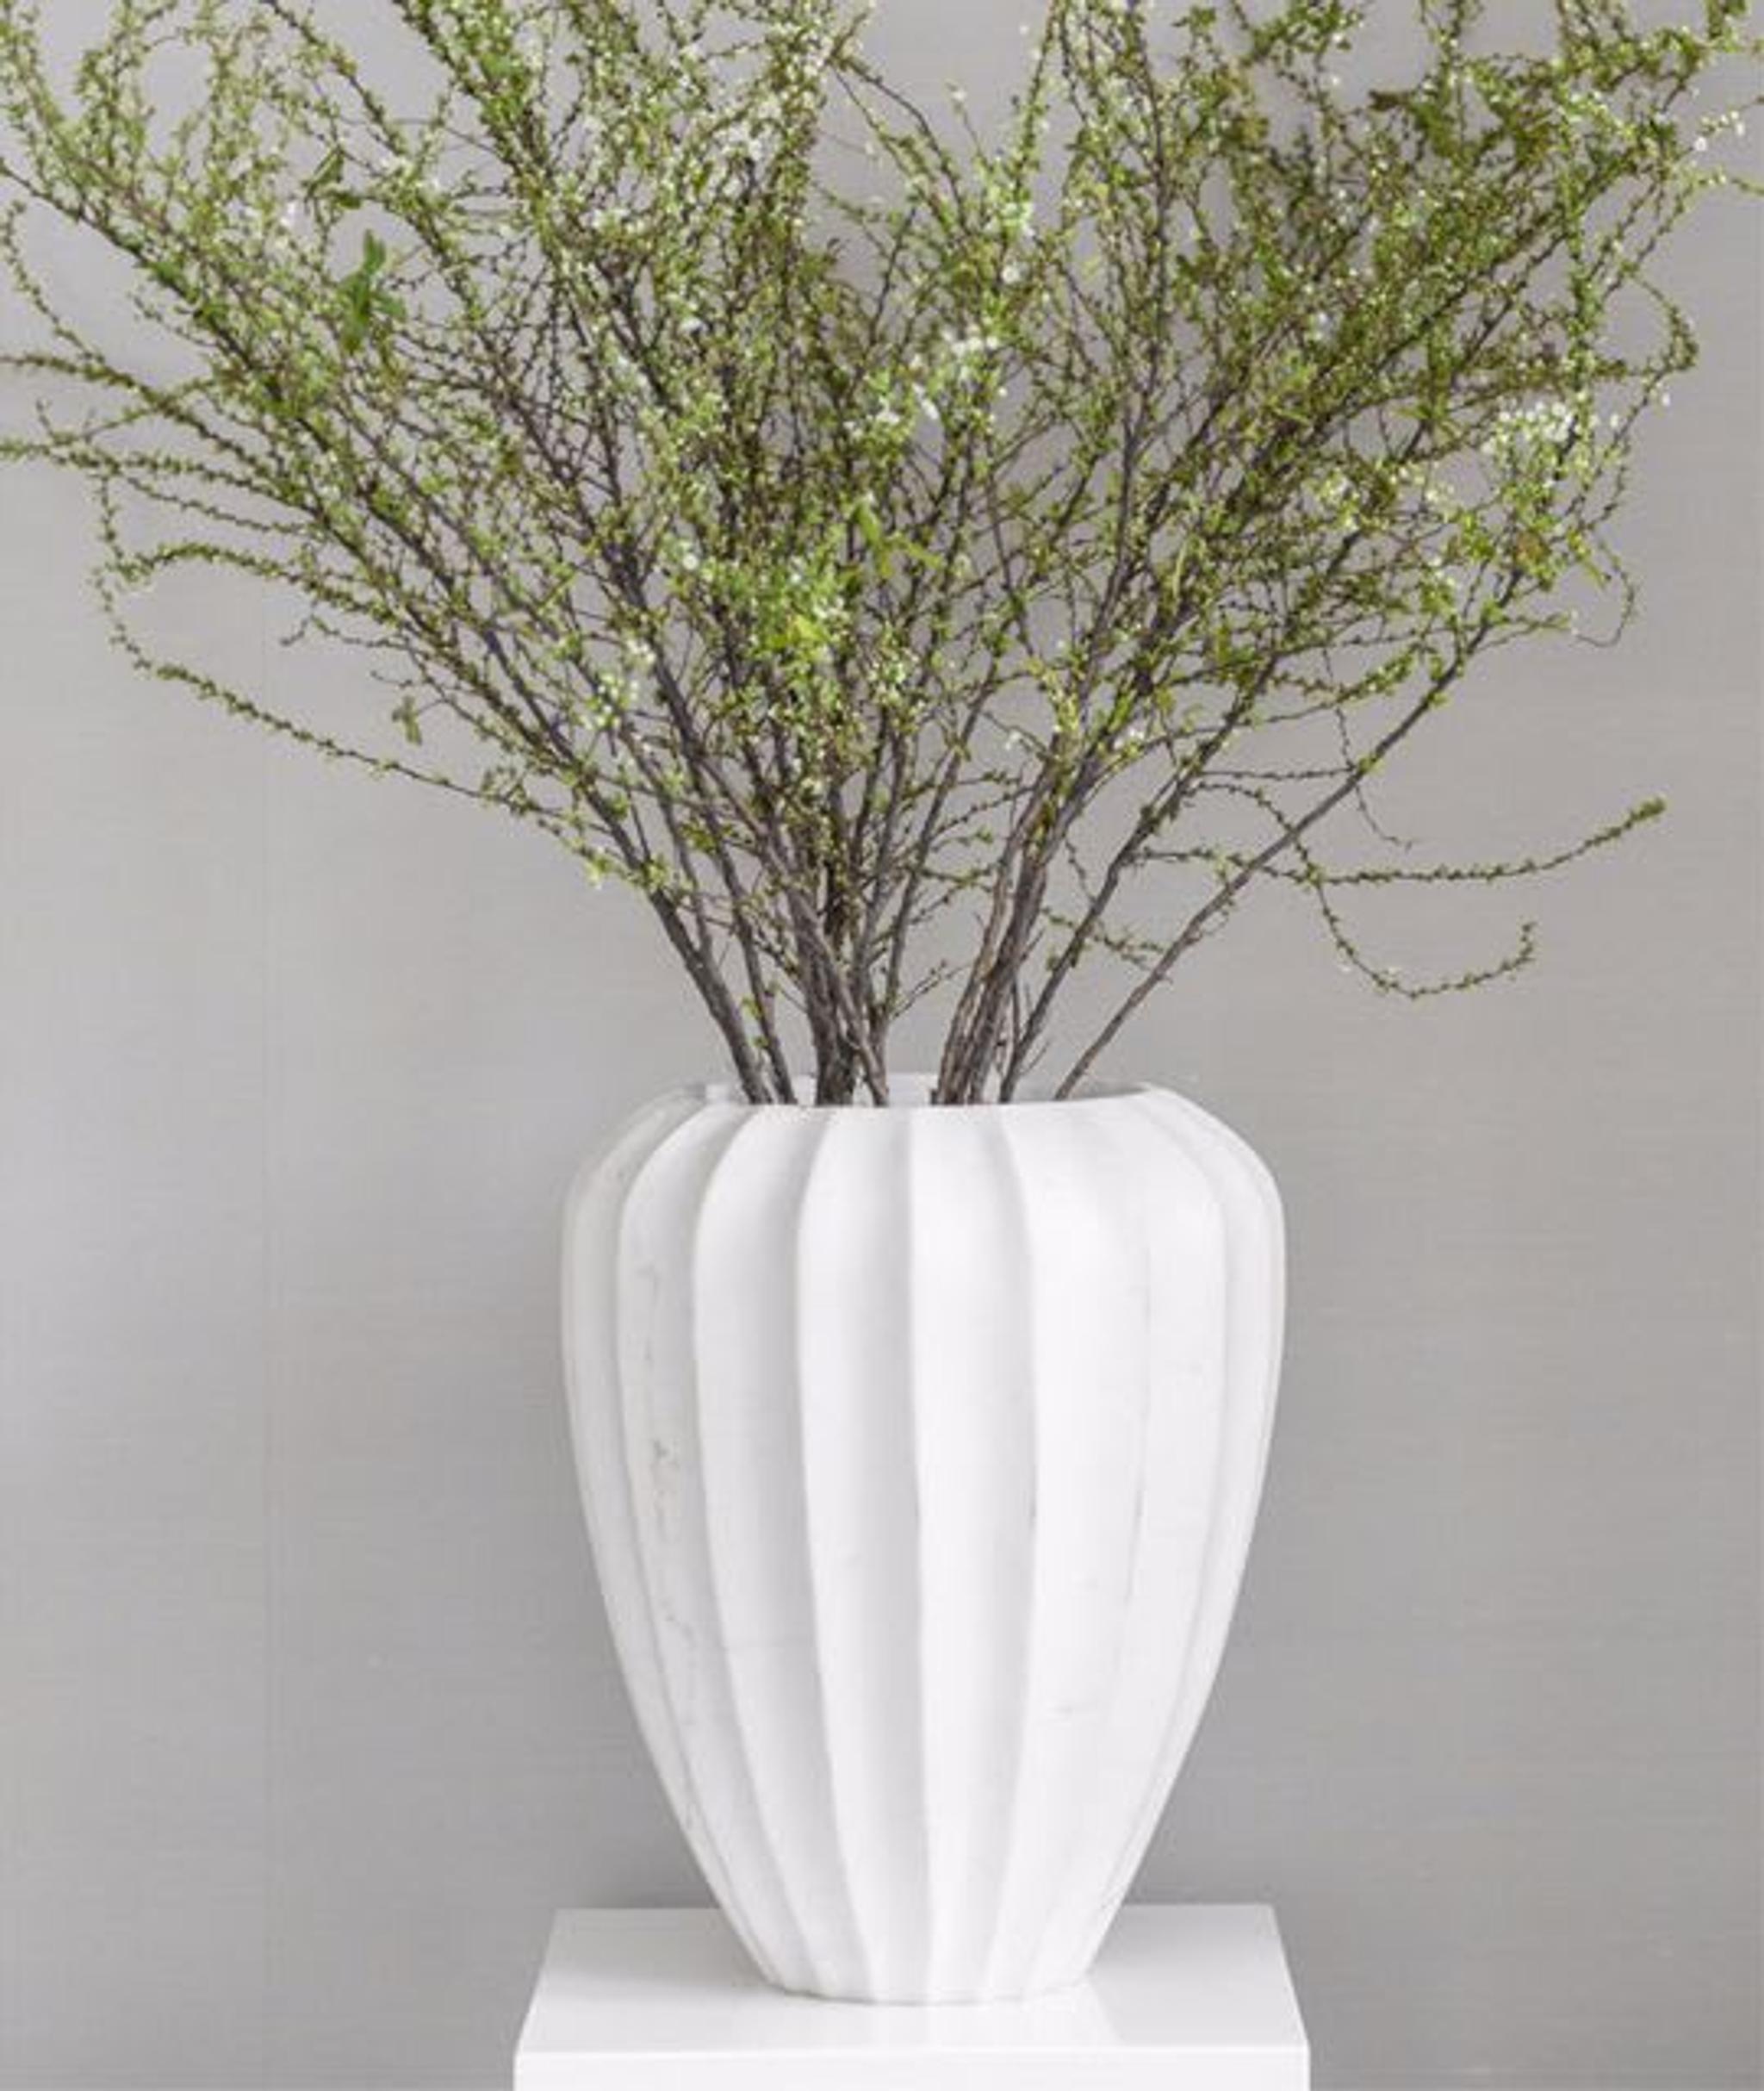 Dettagli d'arredo raffinati - un vaso in ceramica con lunghi rami verdi stagionali aggiunge un tocco di verde